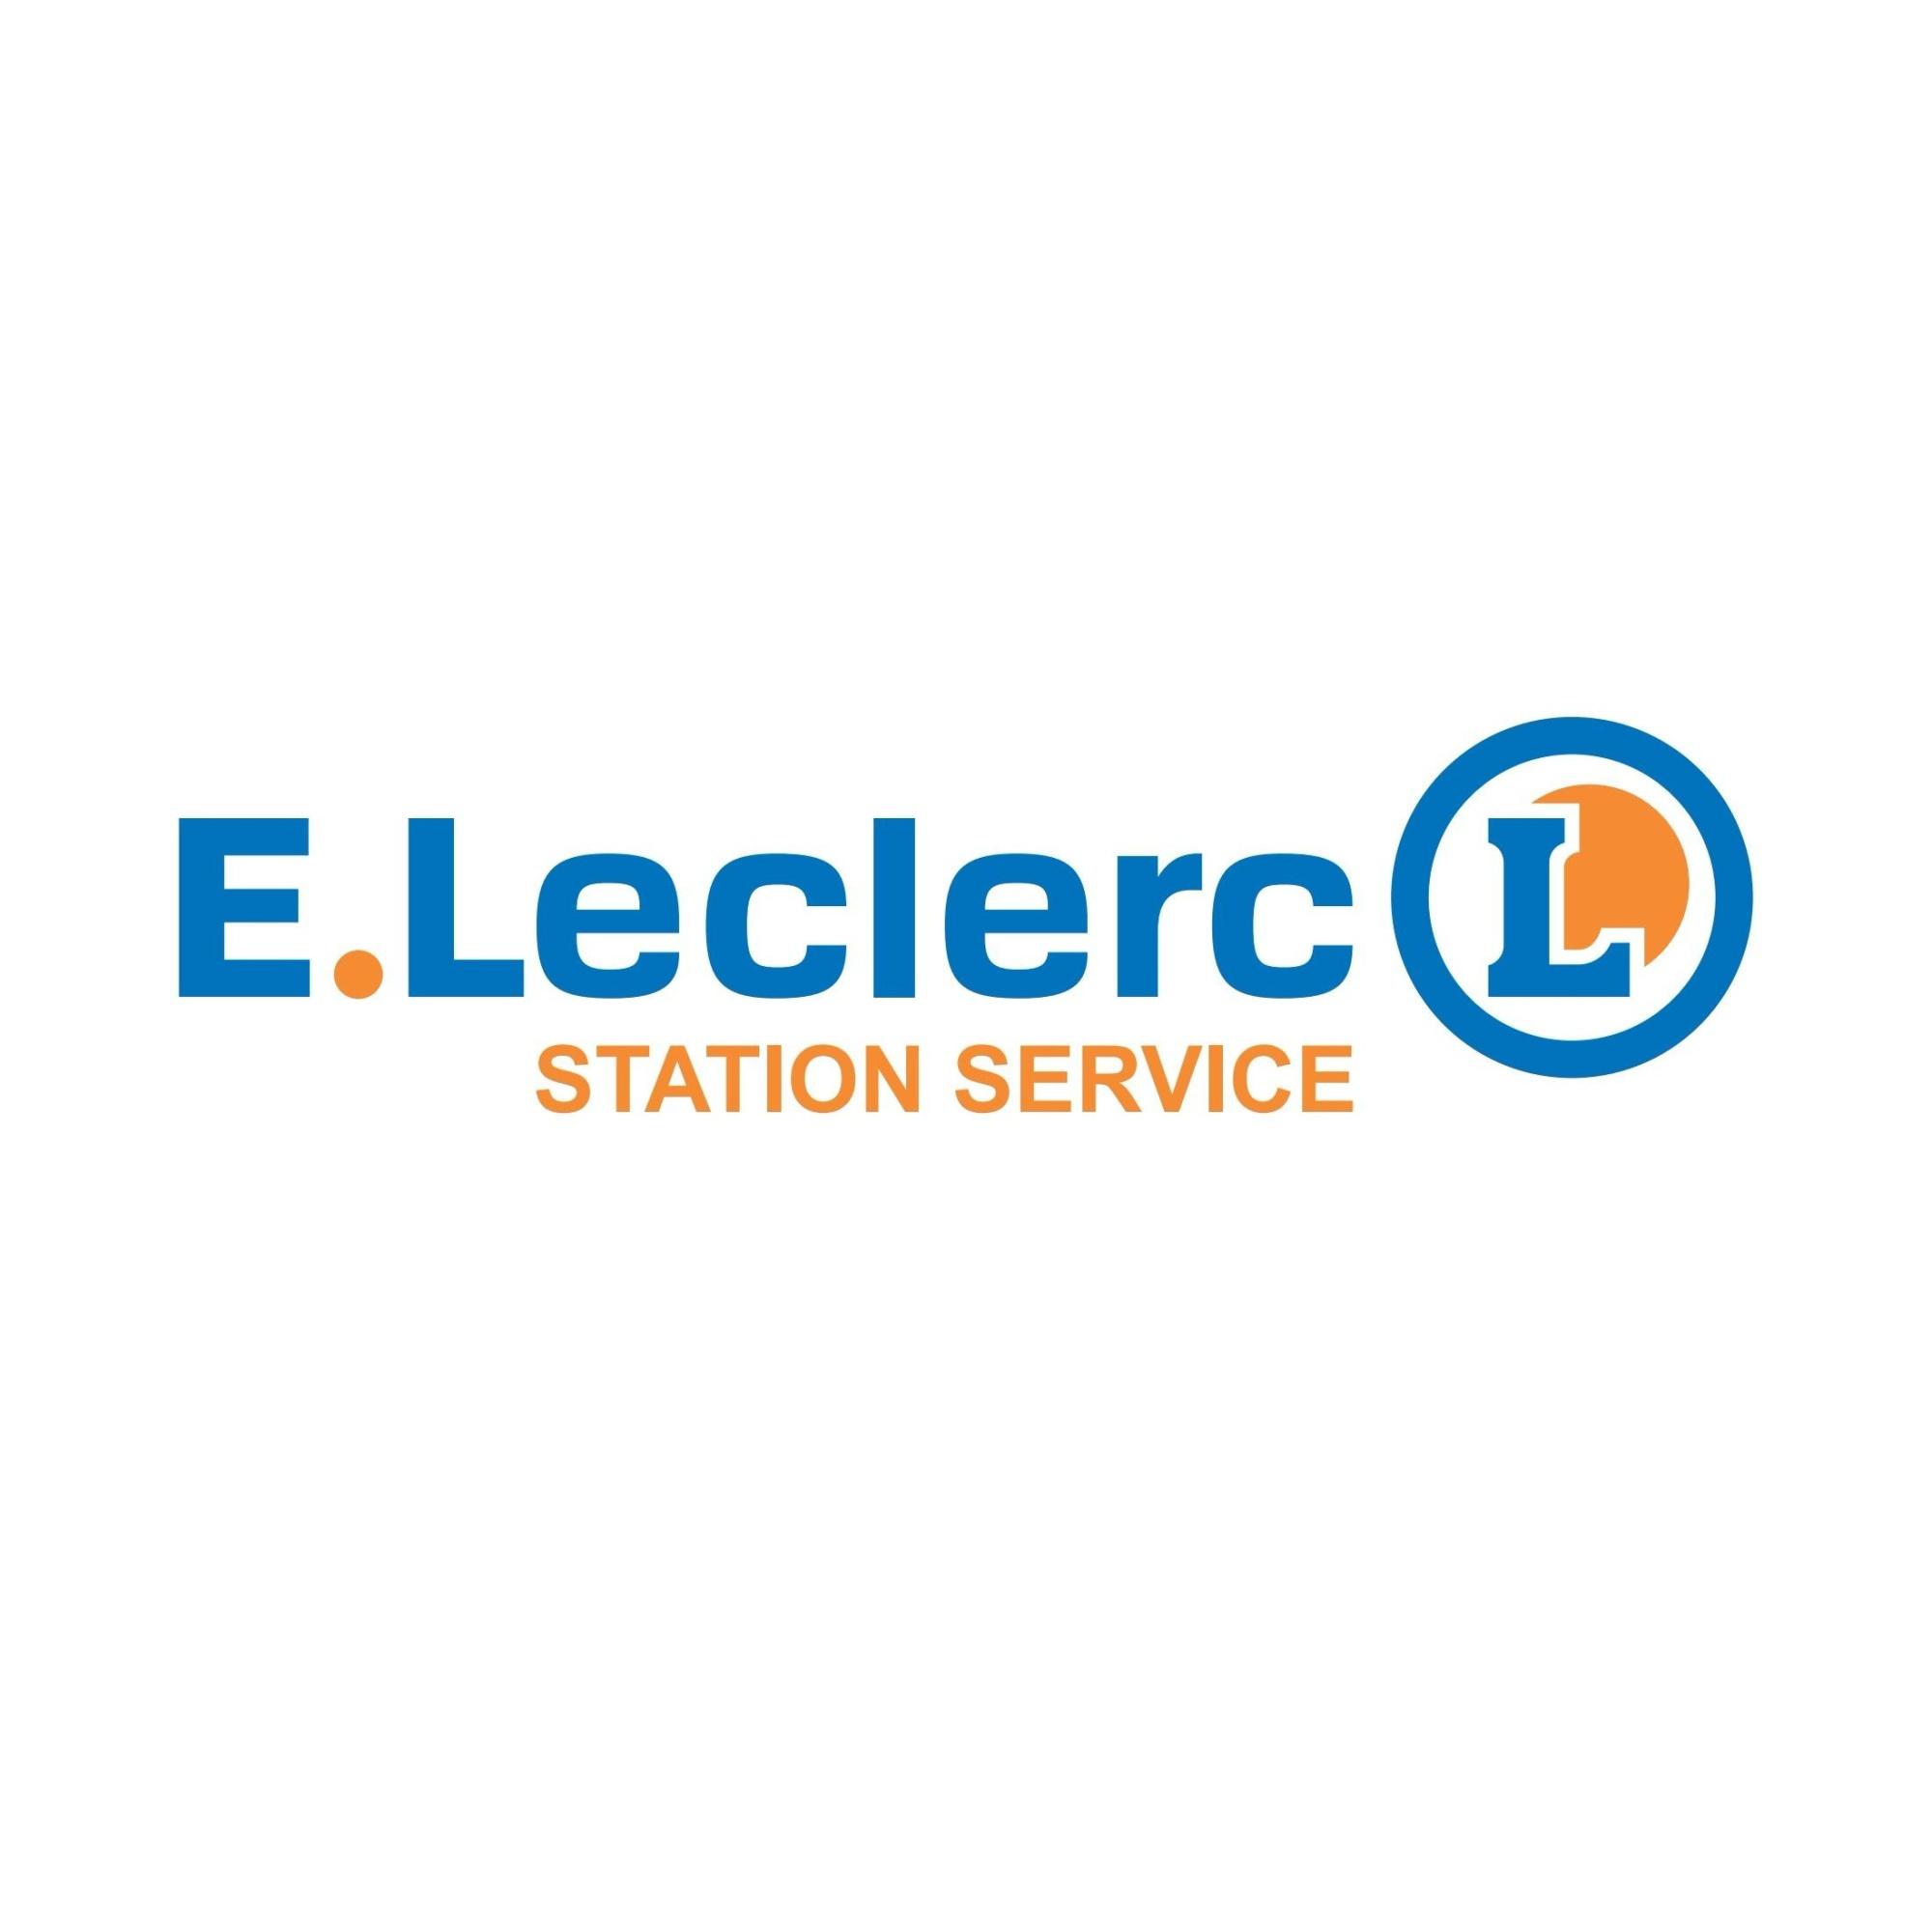 E.leclerc Station Service Argentan